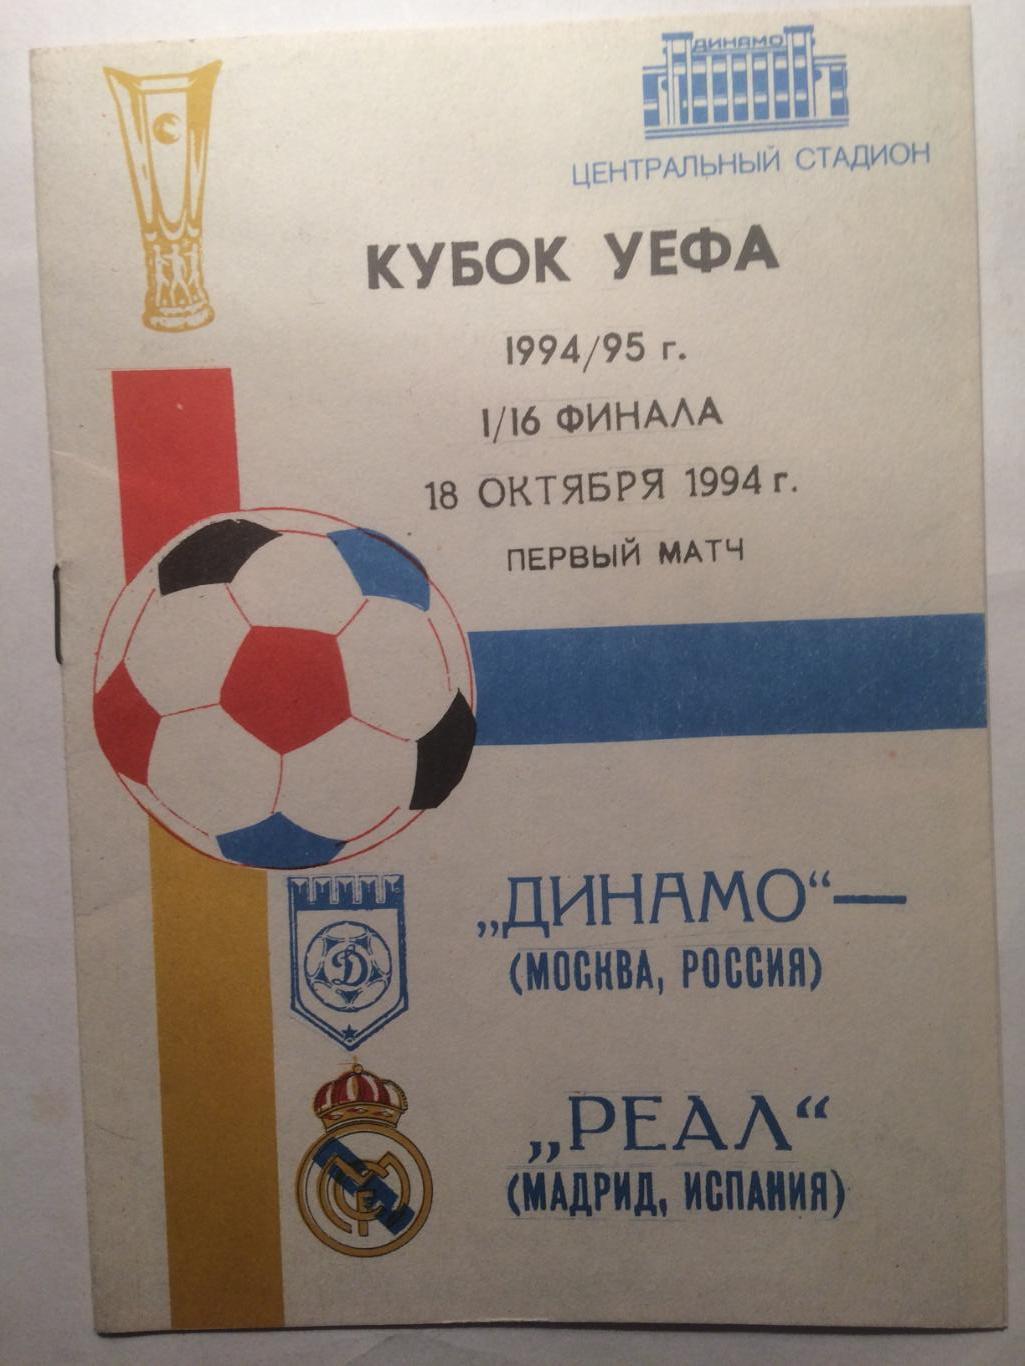 Кубок УЕФА Динамо Москва - Реал Испания 18.10.1994